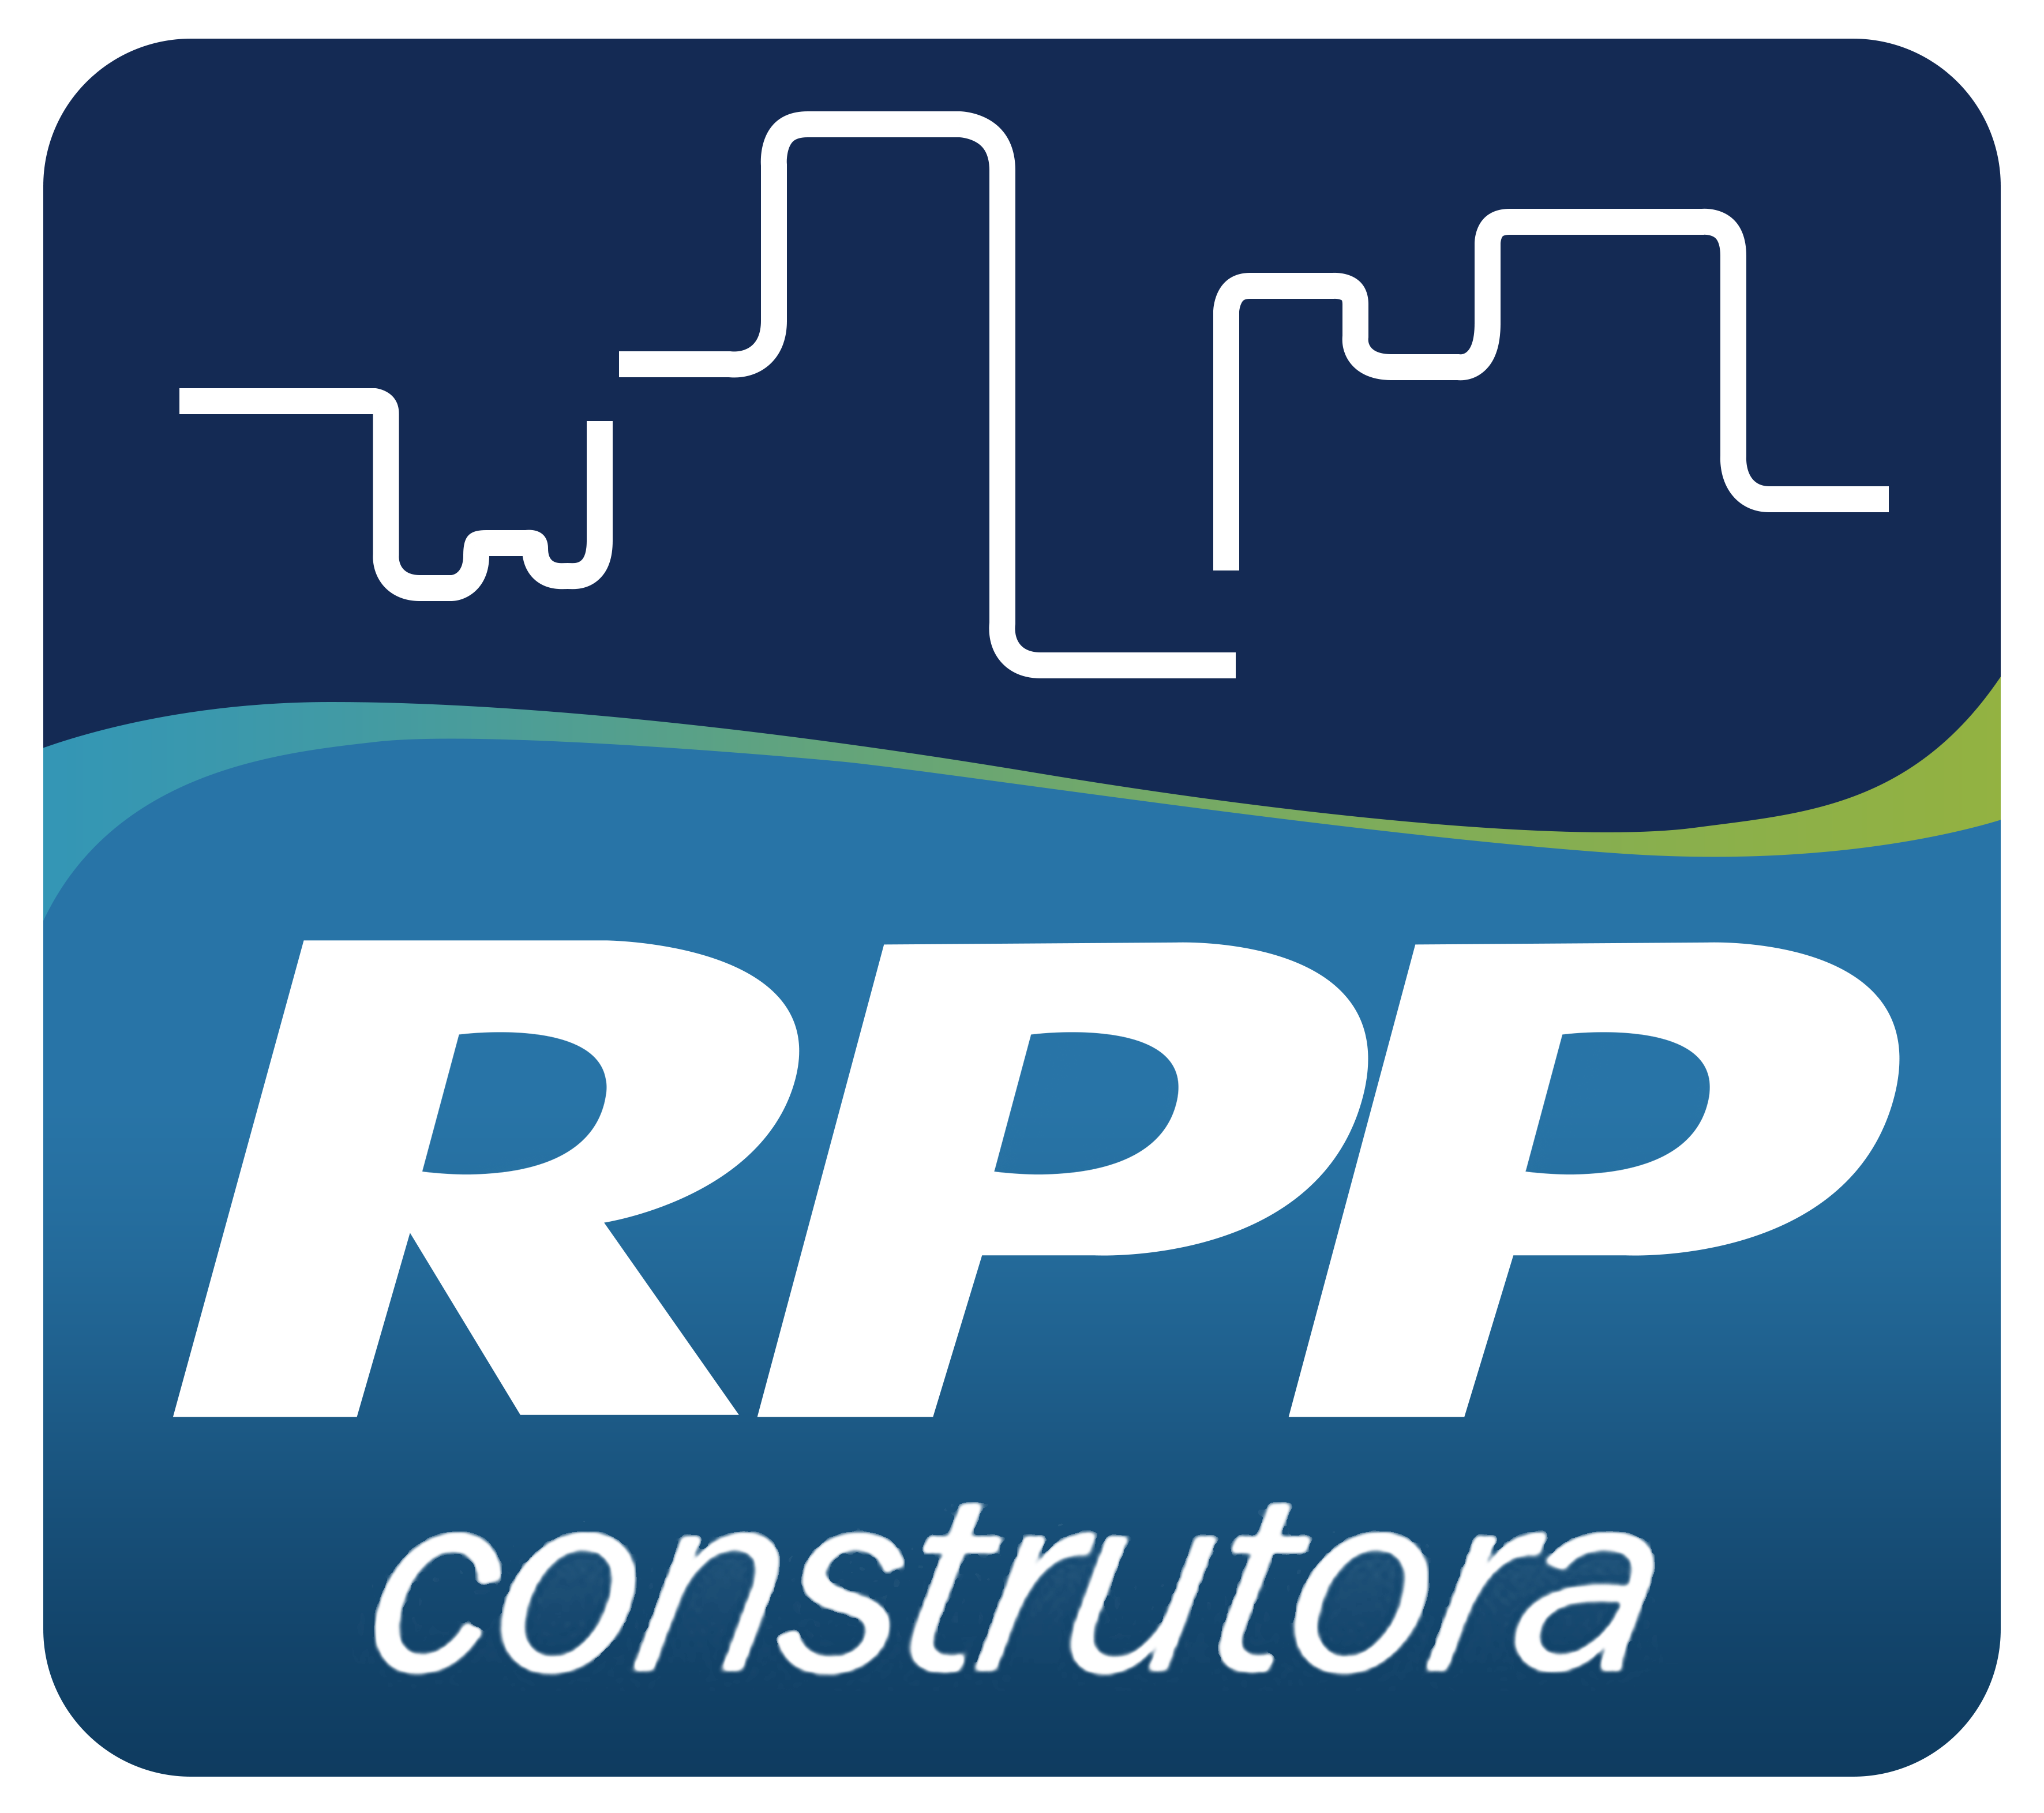 Logo RPP